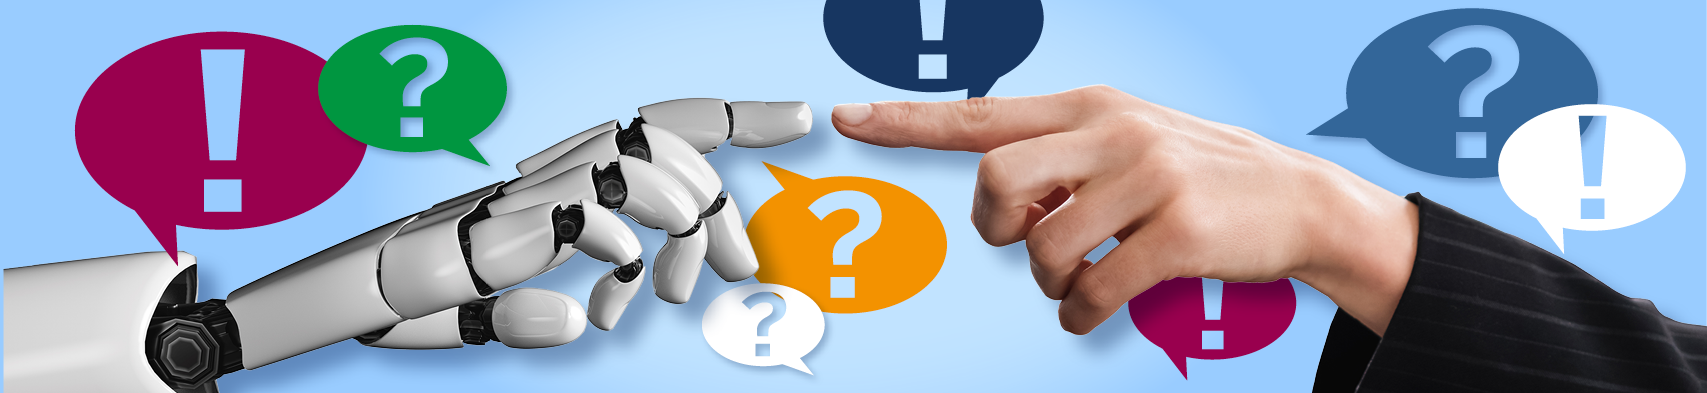 Der Zeigefinger einer Roboterhand sowie einer menschlichen Hand berühren sich. Um die beiden Hände herum befinden sich bunte Sprechblasen mit Frage- und Ausrufezeichen.